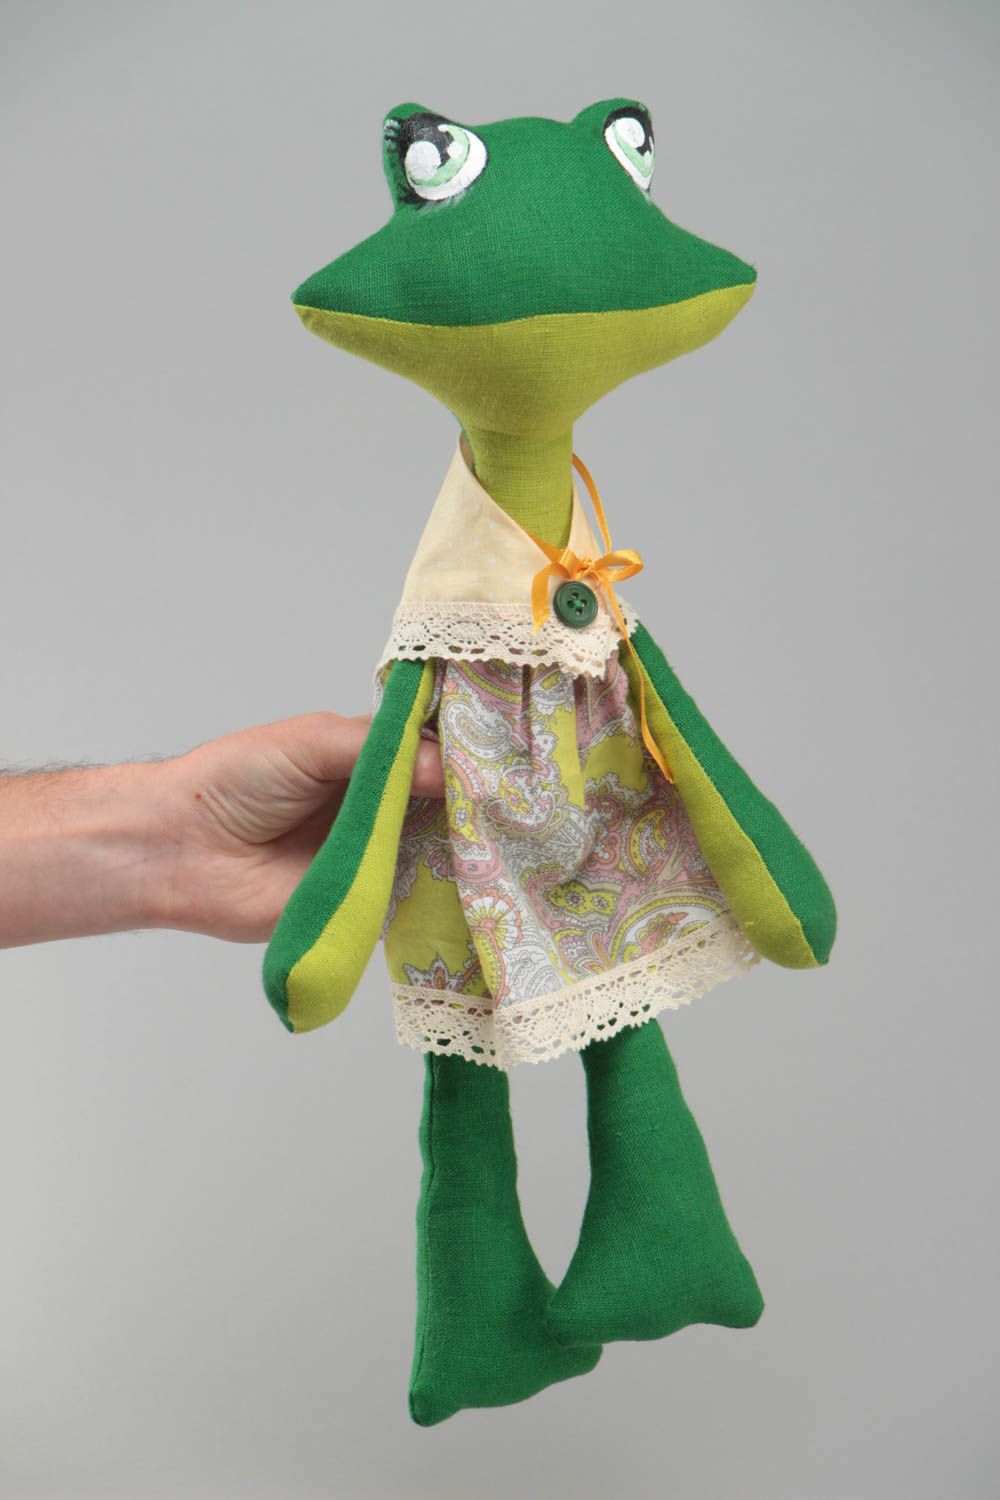 Тканевая игрушка Лягушка зеленая расписанная акриловыми красками ручной работы фото 5